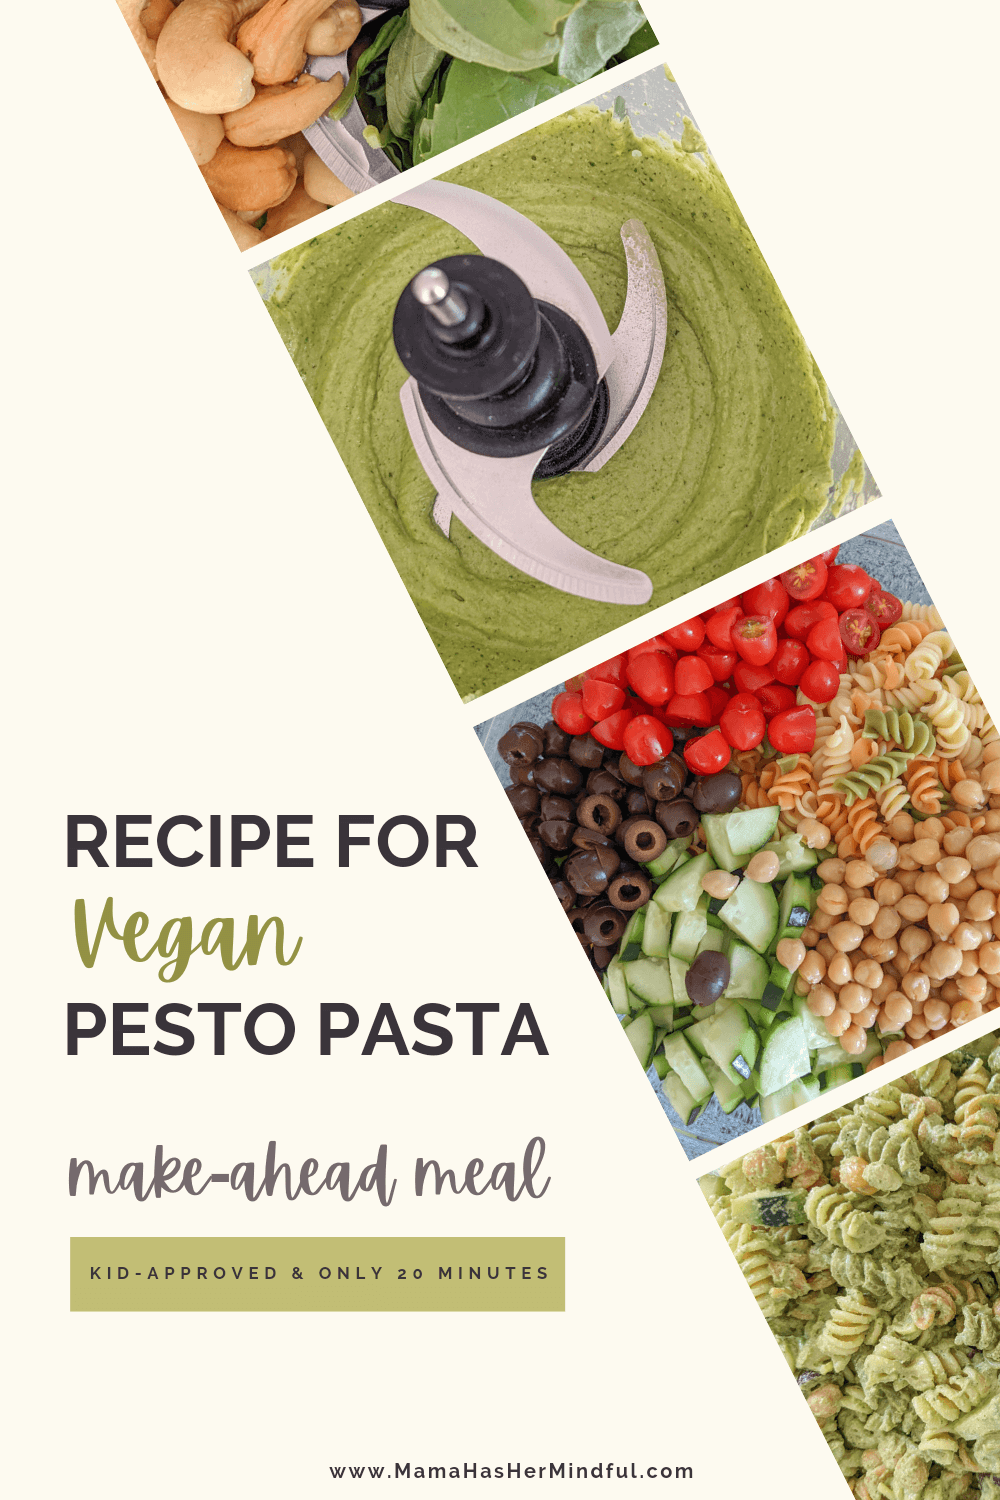 Recipe for Vegan Pesto Pasta - 20 Minute Make-Ahead Meal